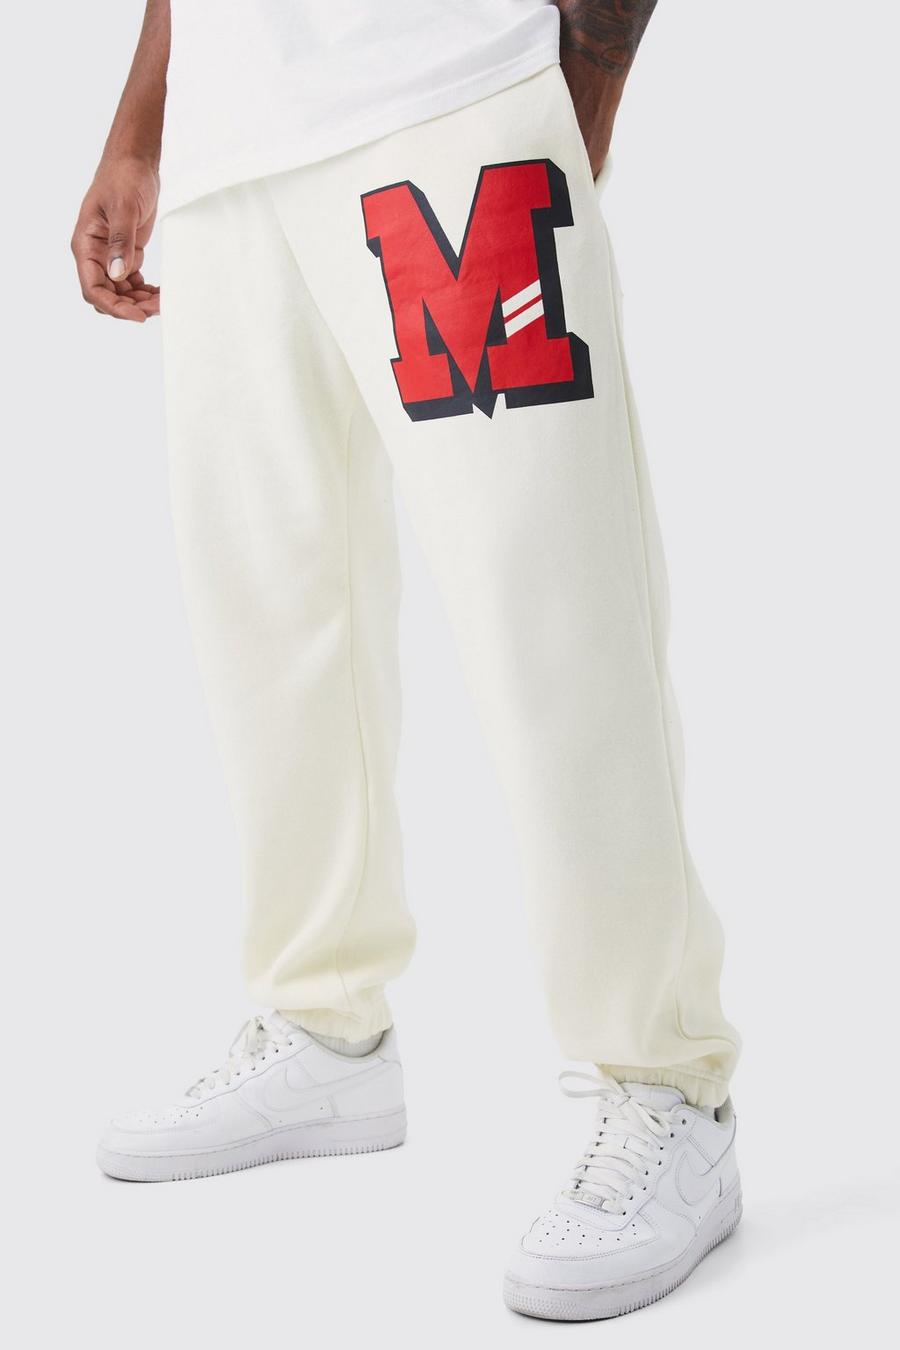 Pantalón deportivo Plus con estampado gráfico universitario M, Ecru bianco